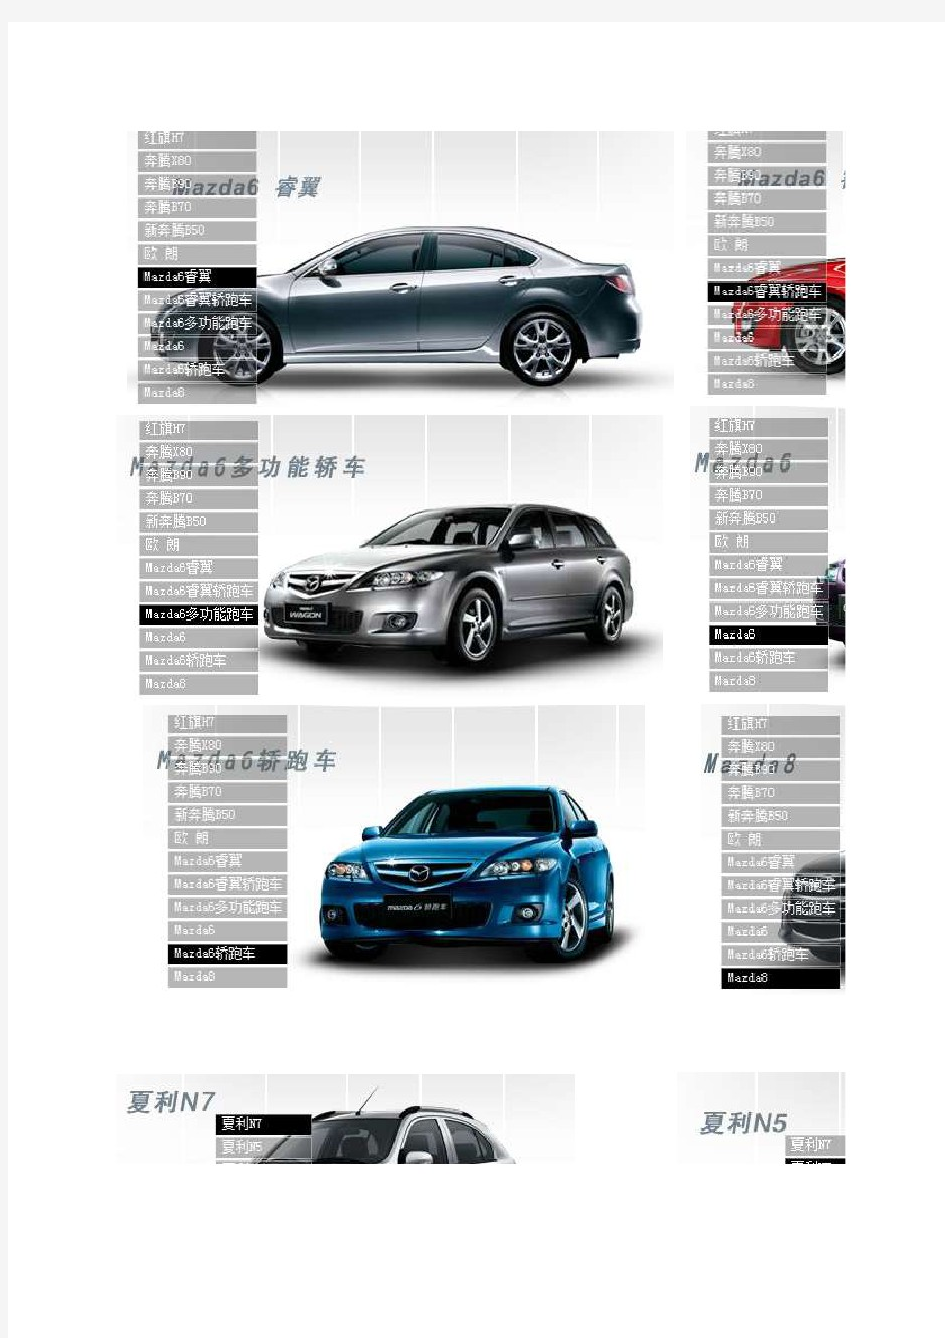 国内各汽车品牌车型一览表